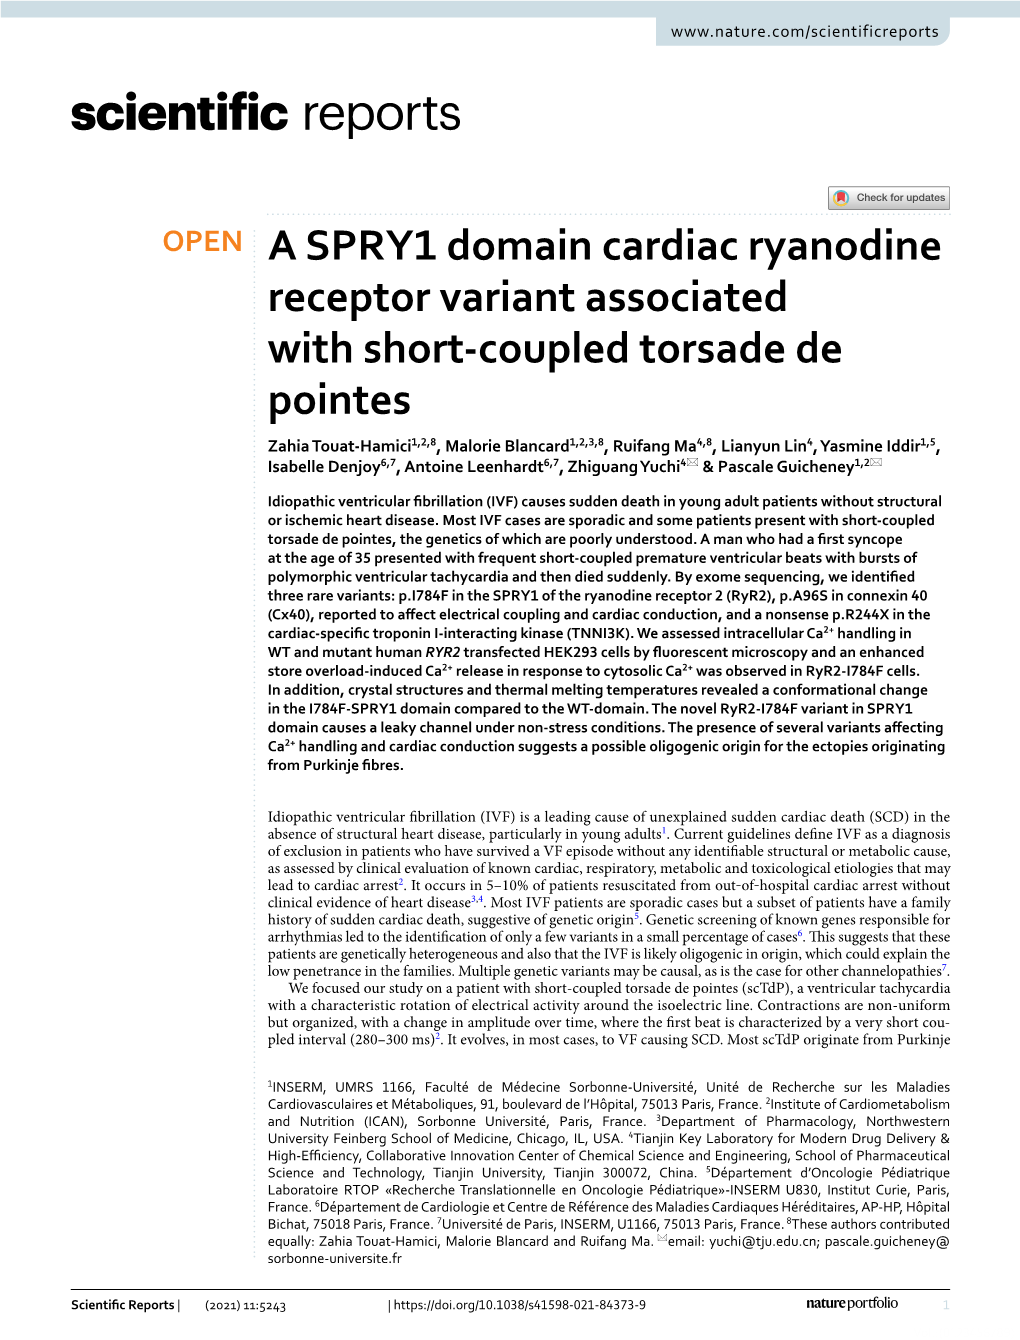 A SPRY1 Domain Cardiac Ryanodine Receptor Variant Associated With